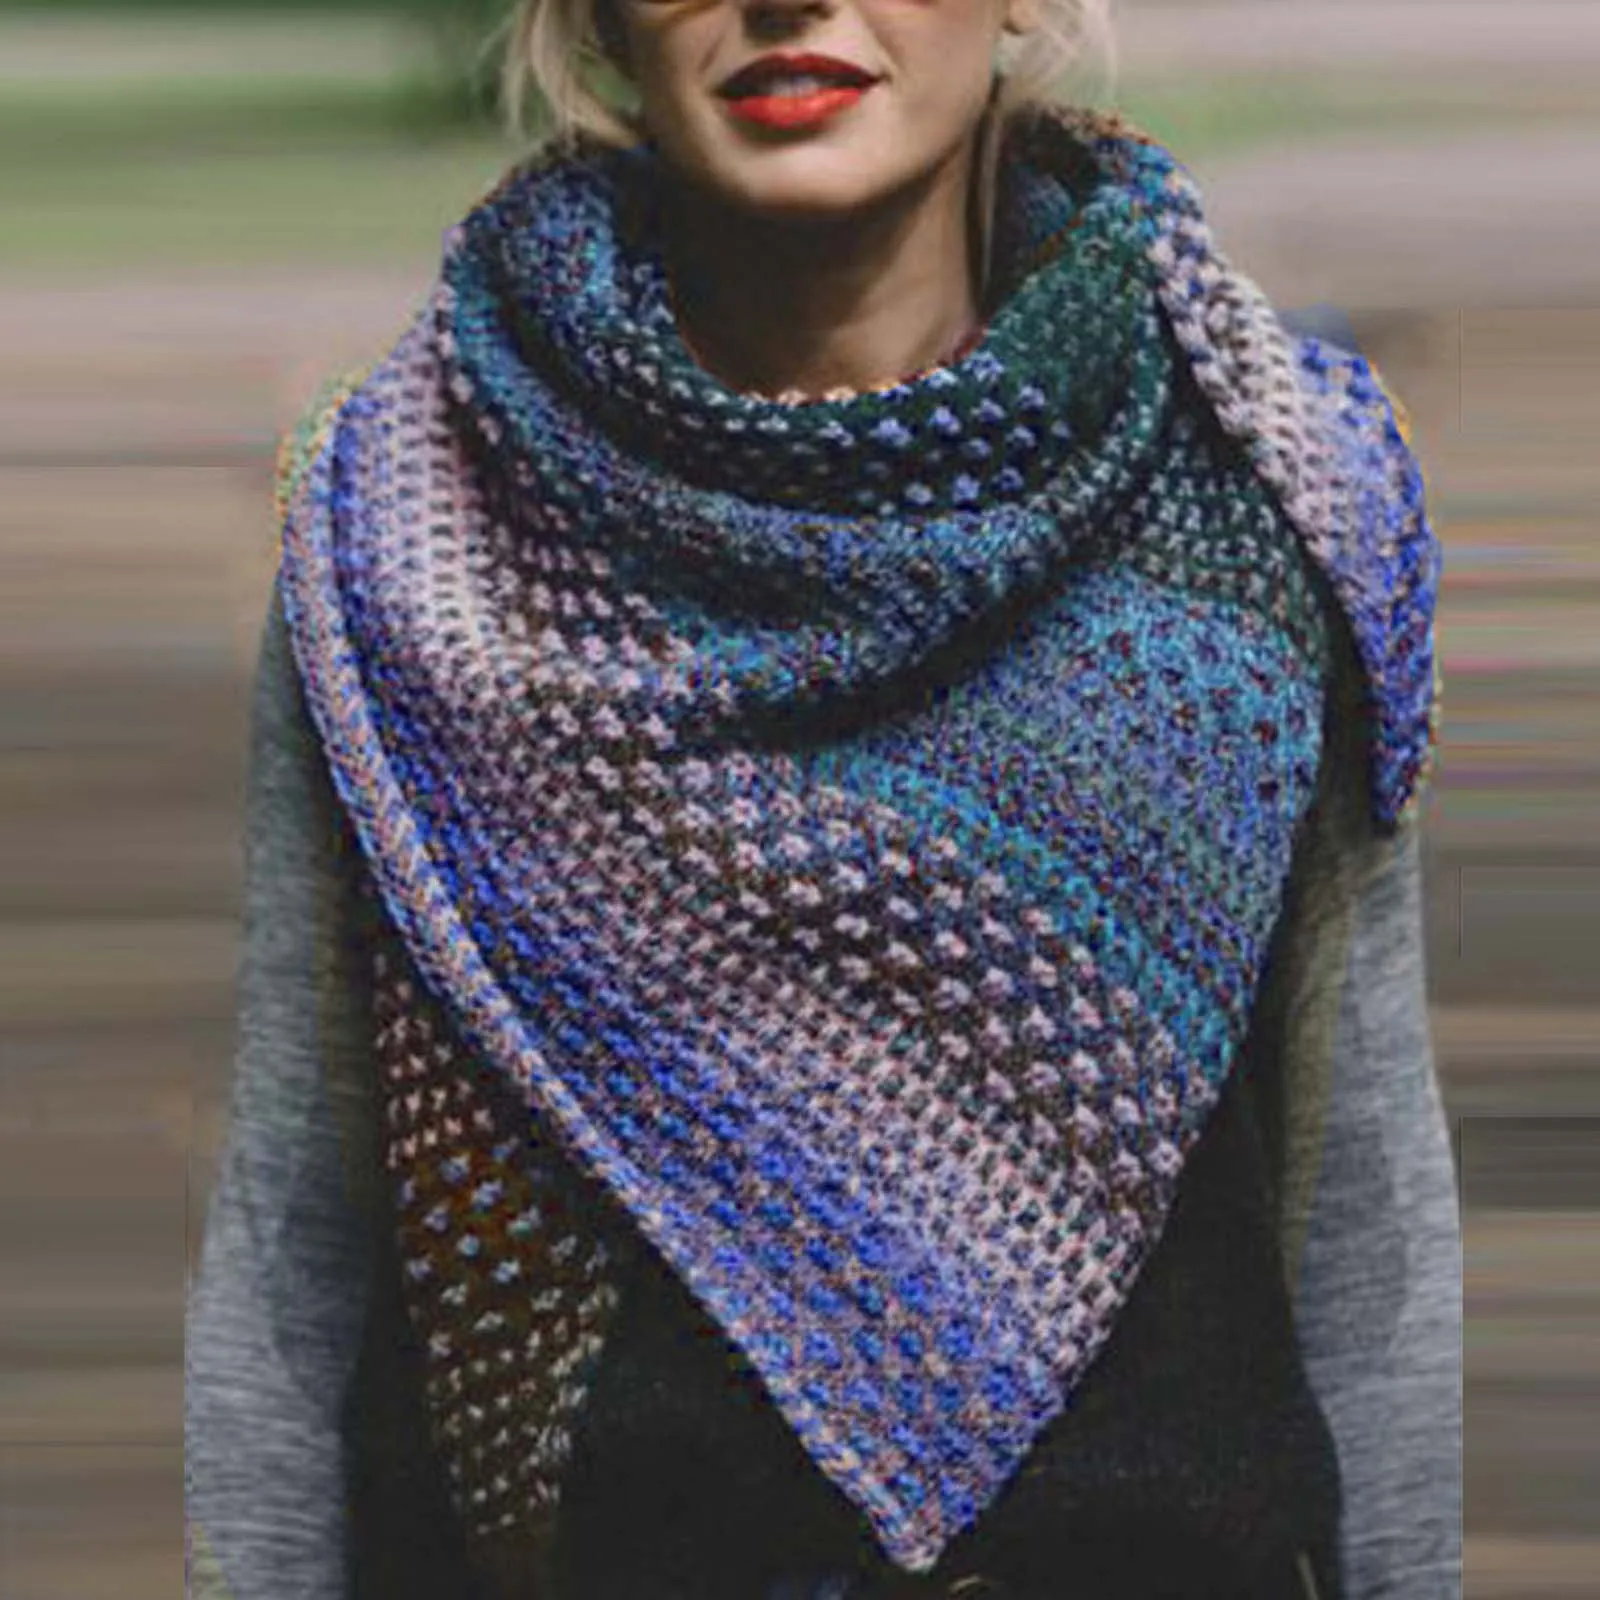 Las mujeres de Invierno Cálido Cara de Color Colorido Crochet Engrosamiento de punto Suave Chal Bufanda Vintage Otoño Plaid Bufanda Larga Chales шарф hiyab 3